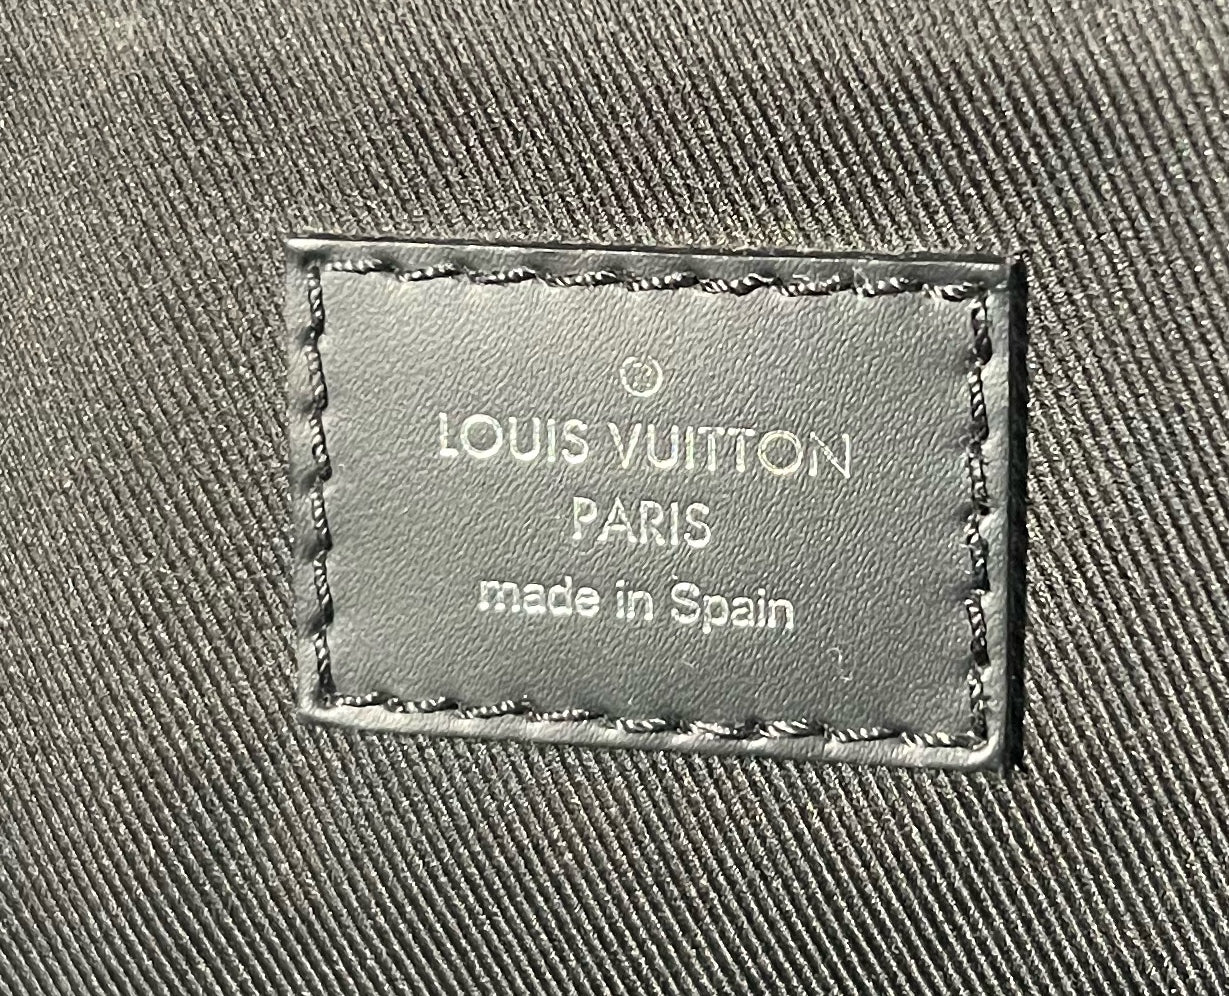 Louis Vuitton District PM Messenger Bag